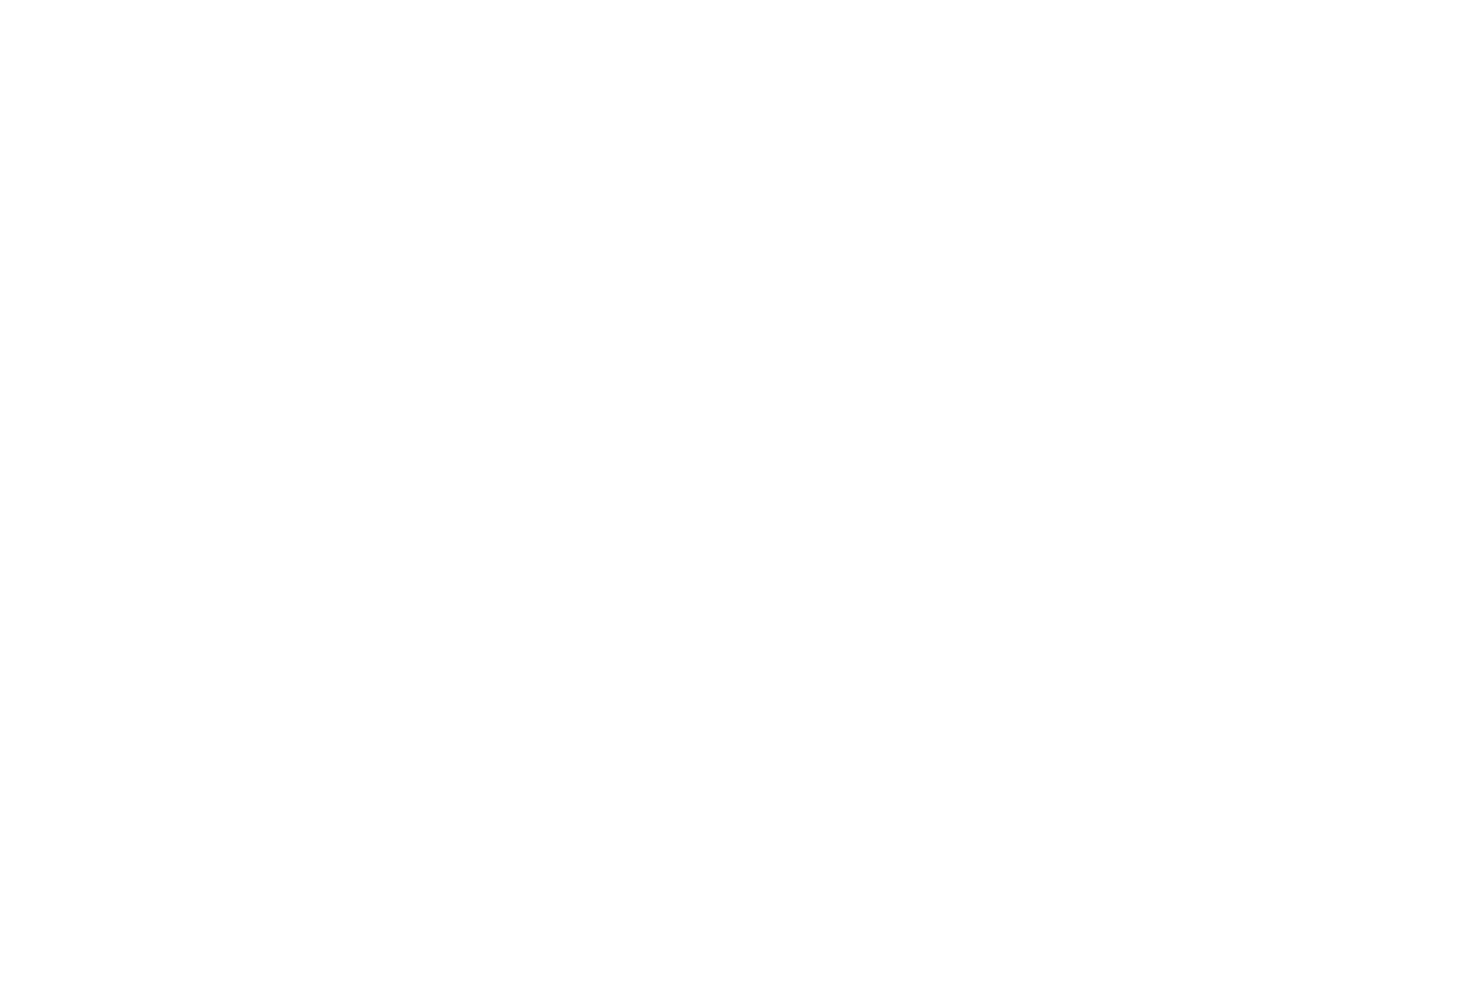 Periwinkle Inn